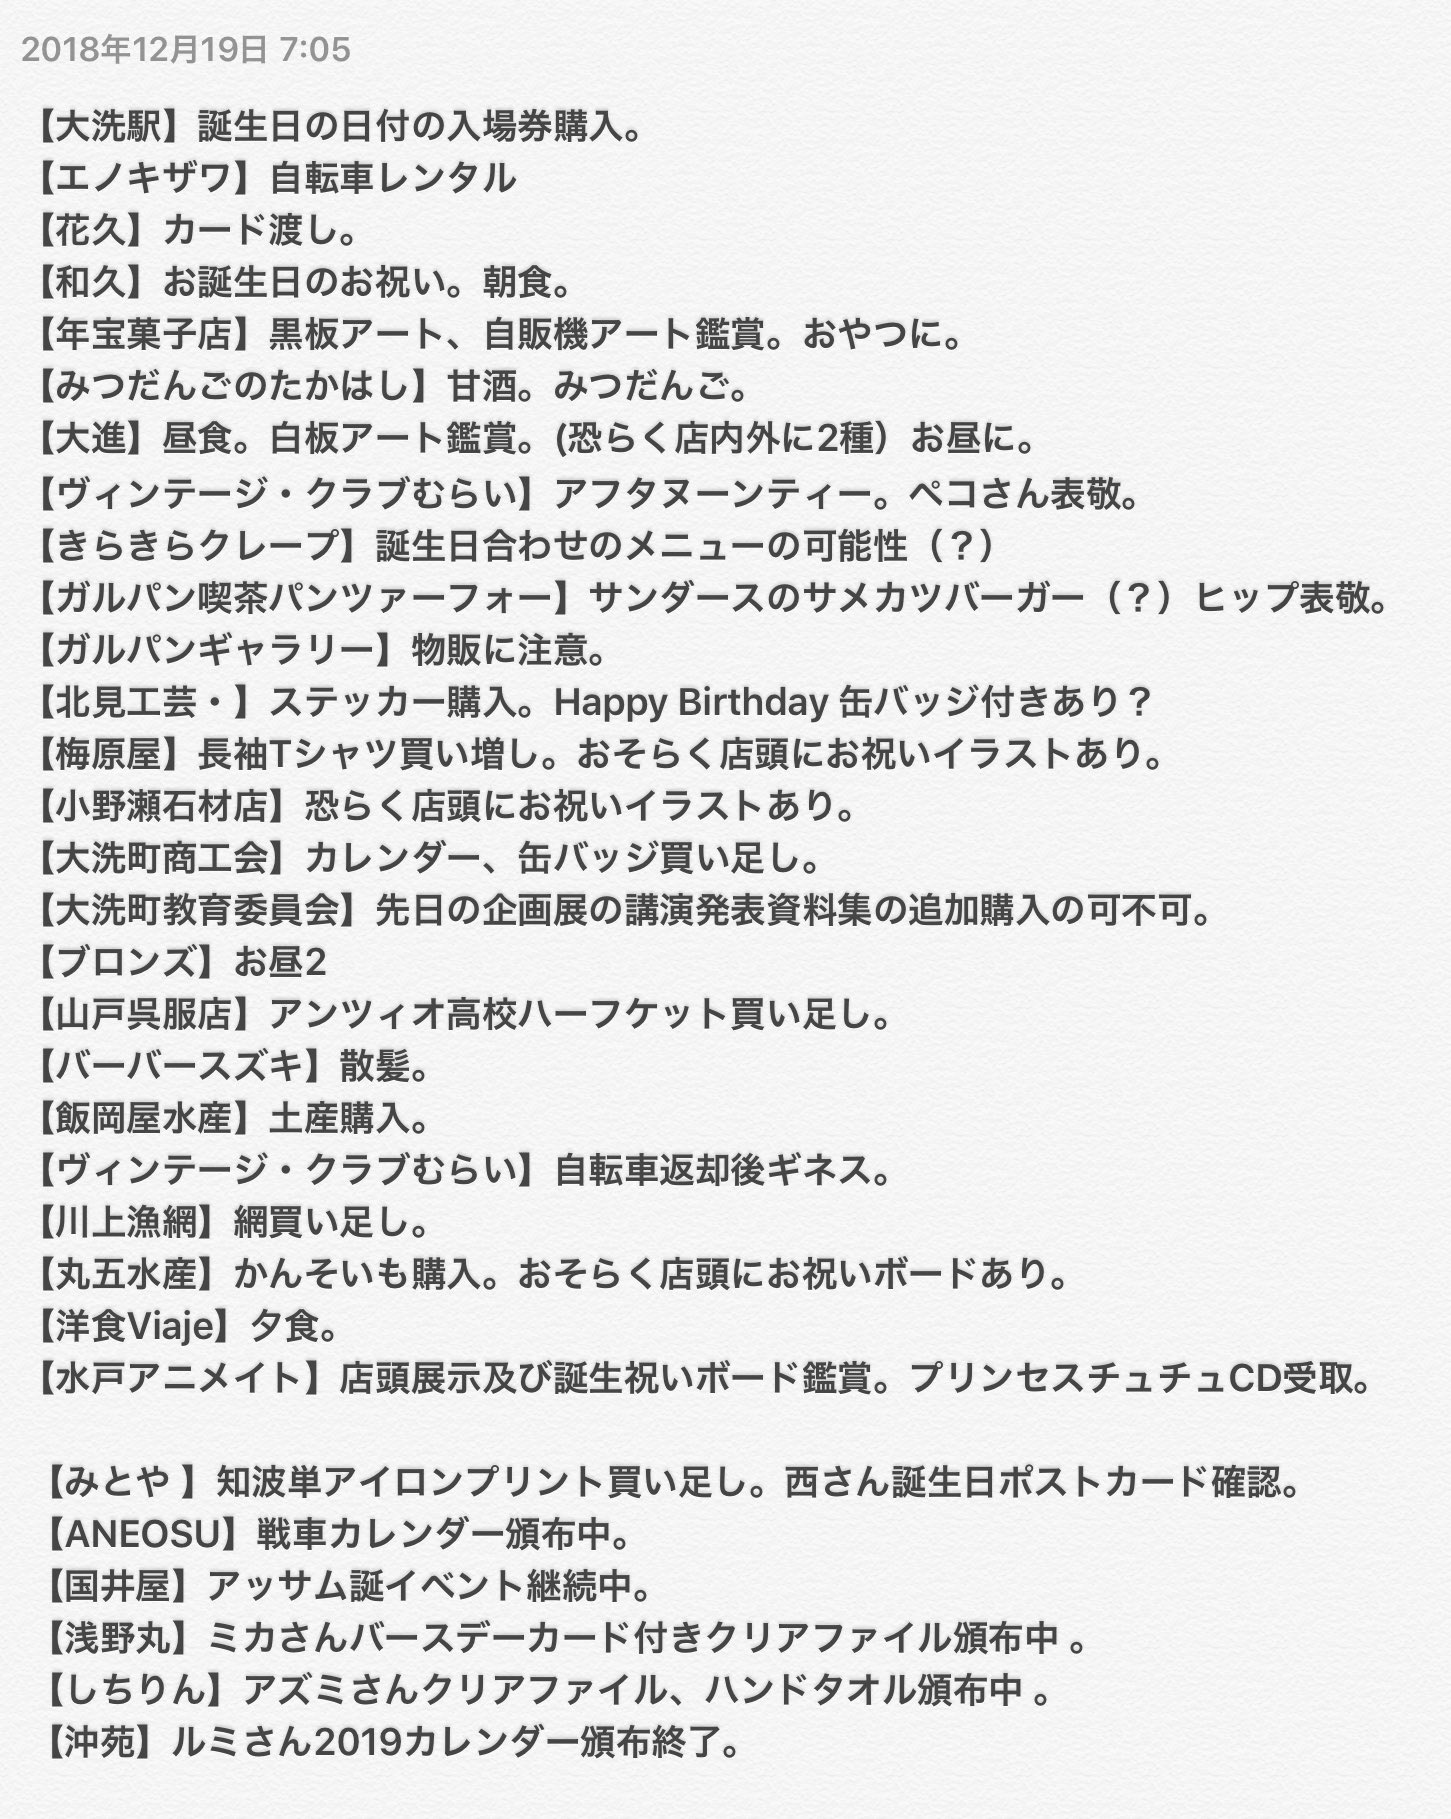 金満 福太郎 1/31 カチューシャ誕 on Twitter: "（ええと、自分が今何をしているかというと、アニメキャラの誕生日を祝うために調整を重ねて有給を取得し、自宅から150キロ離れた町